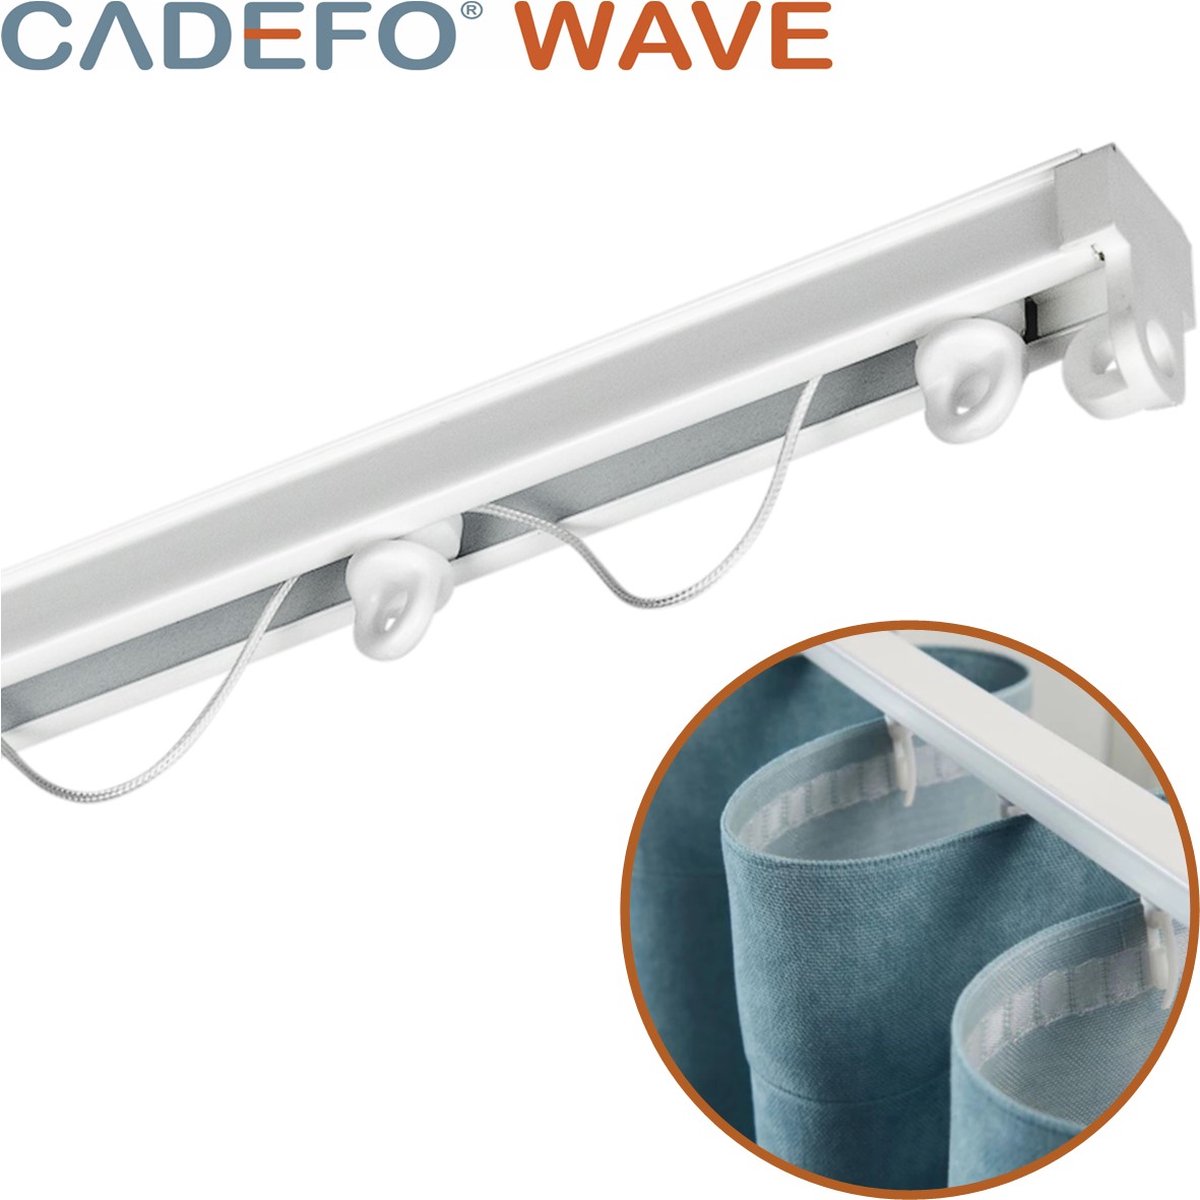 CADEFO WAVE (401 - 450 cm) Gordijnrails - Compleet op maat! - UIT 1 STUK - Leverbaar tot 6 meter - Plafondbevestiging - Lengte 438 cm